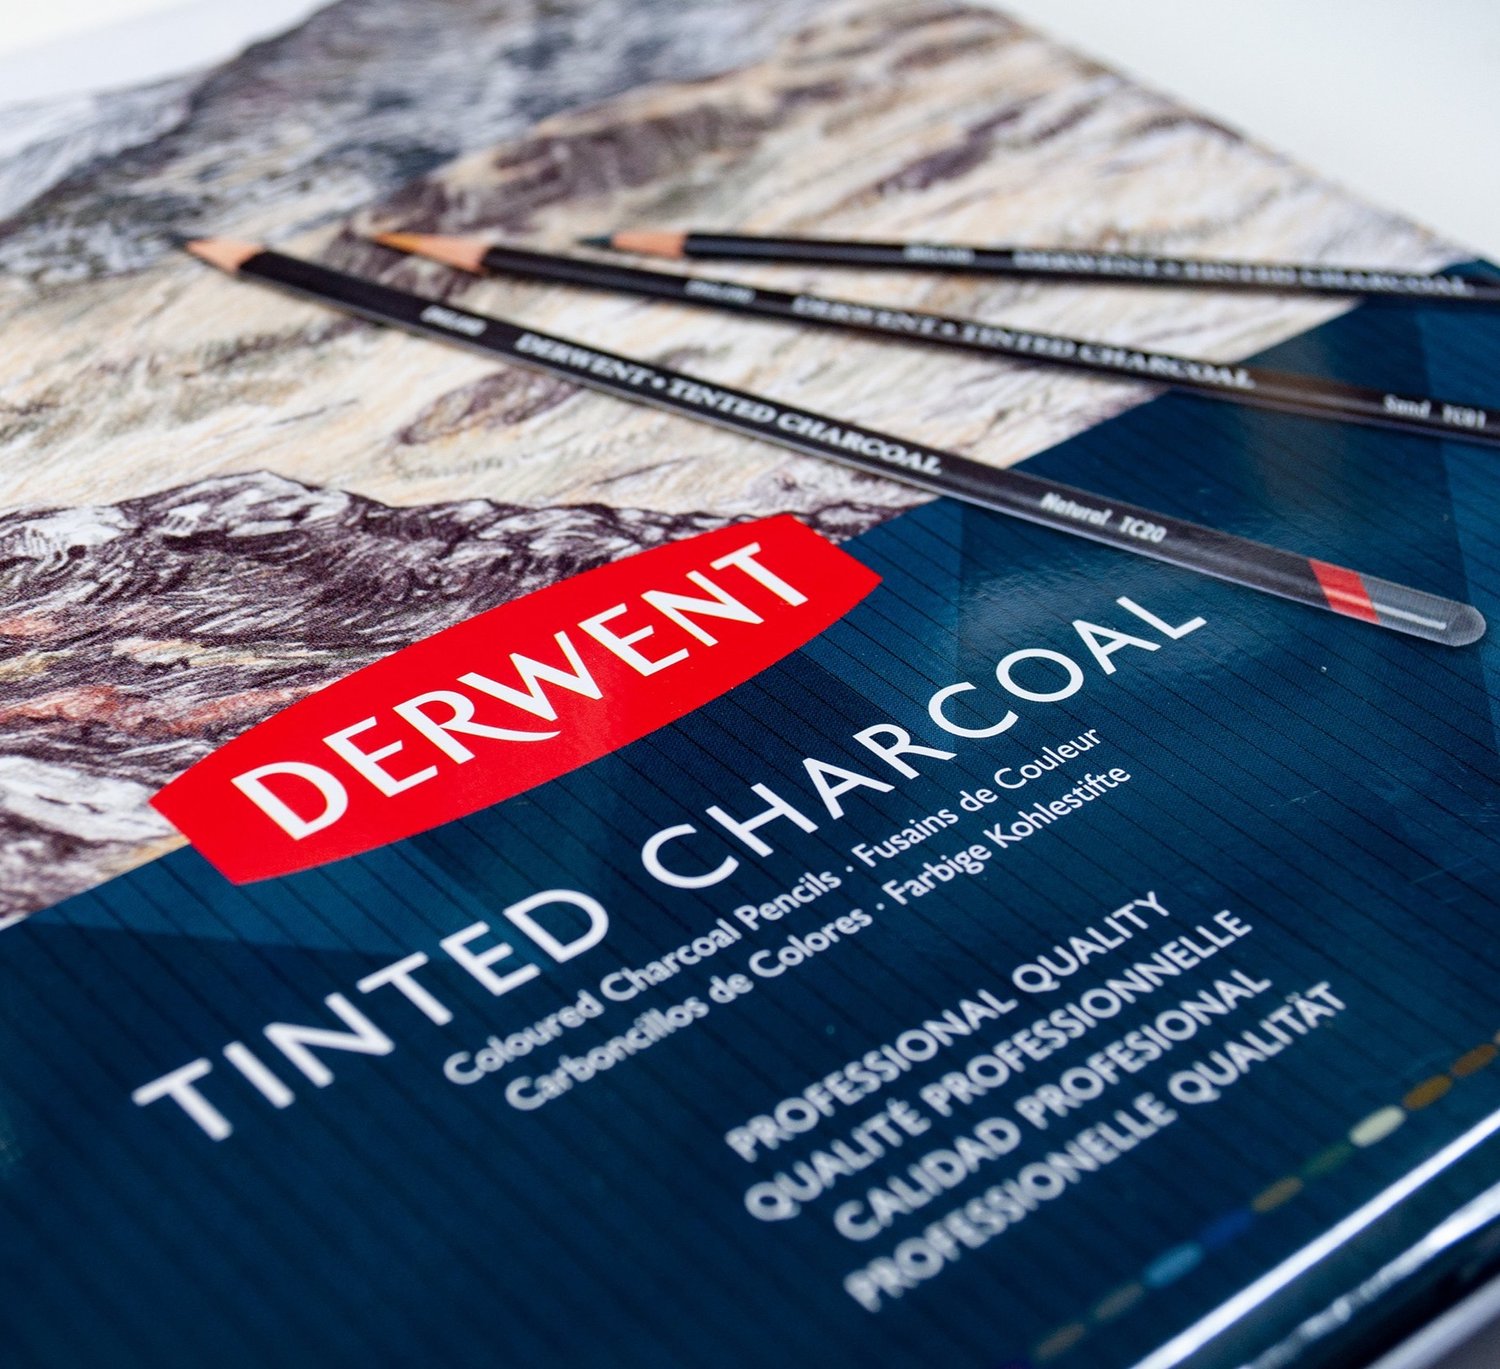 Pencils and Blocks: Derwent Inktense (review)